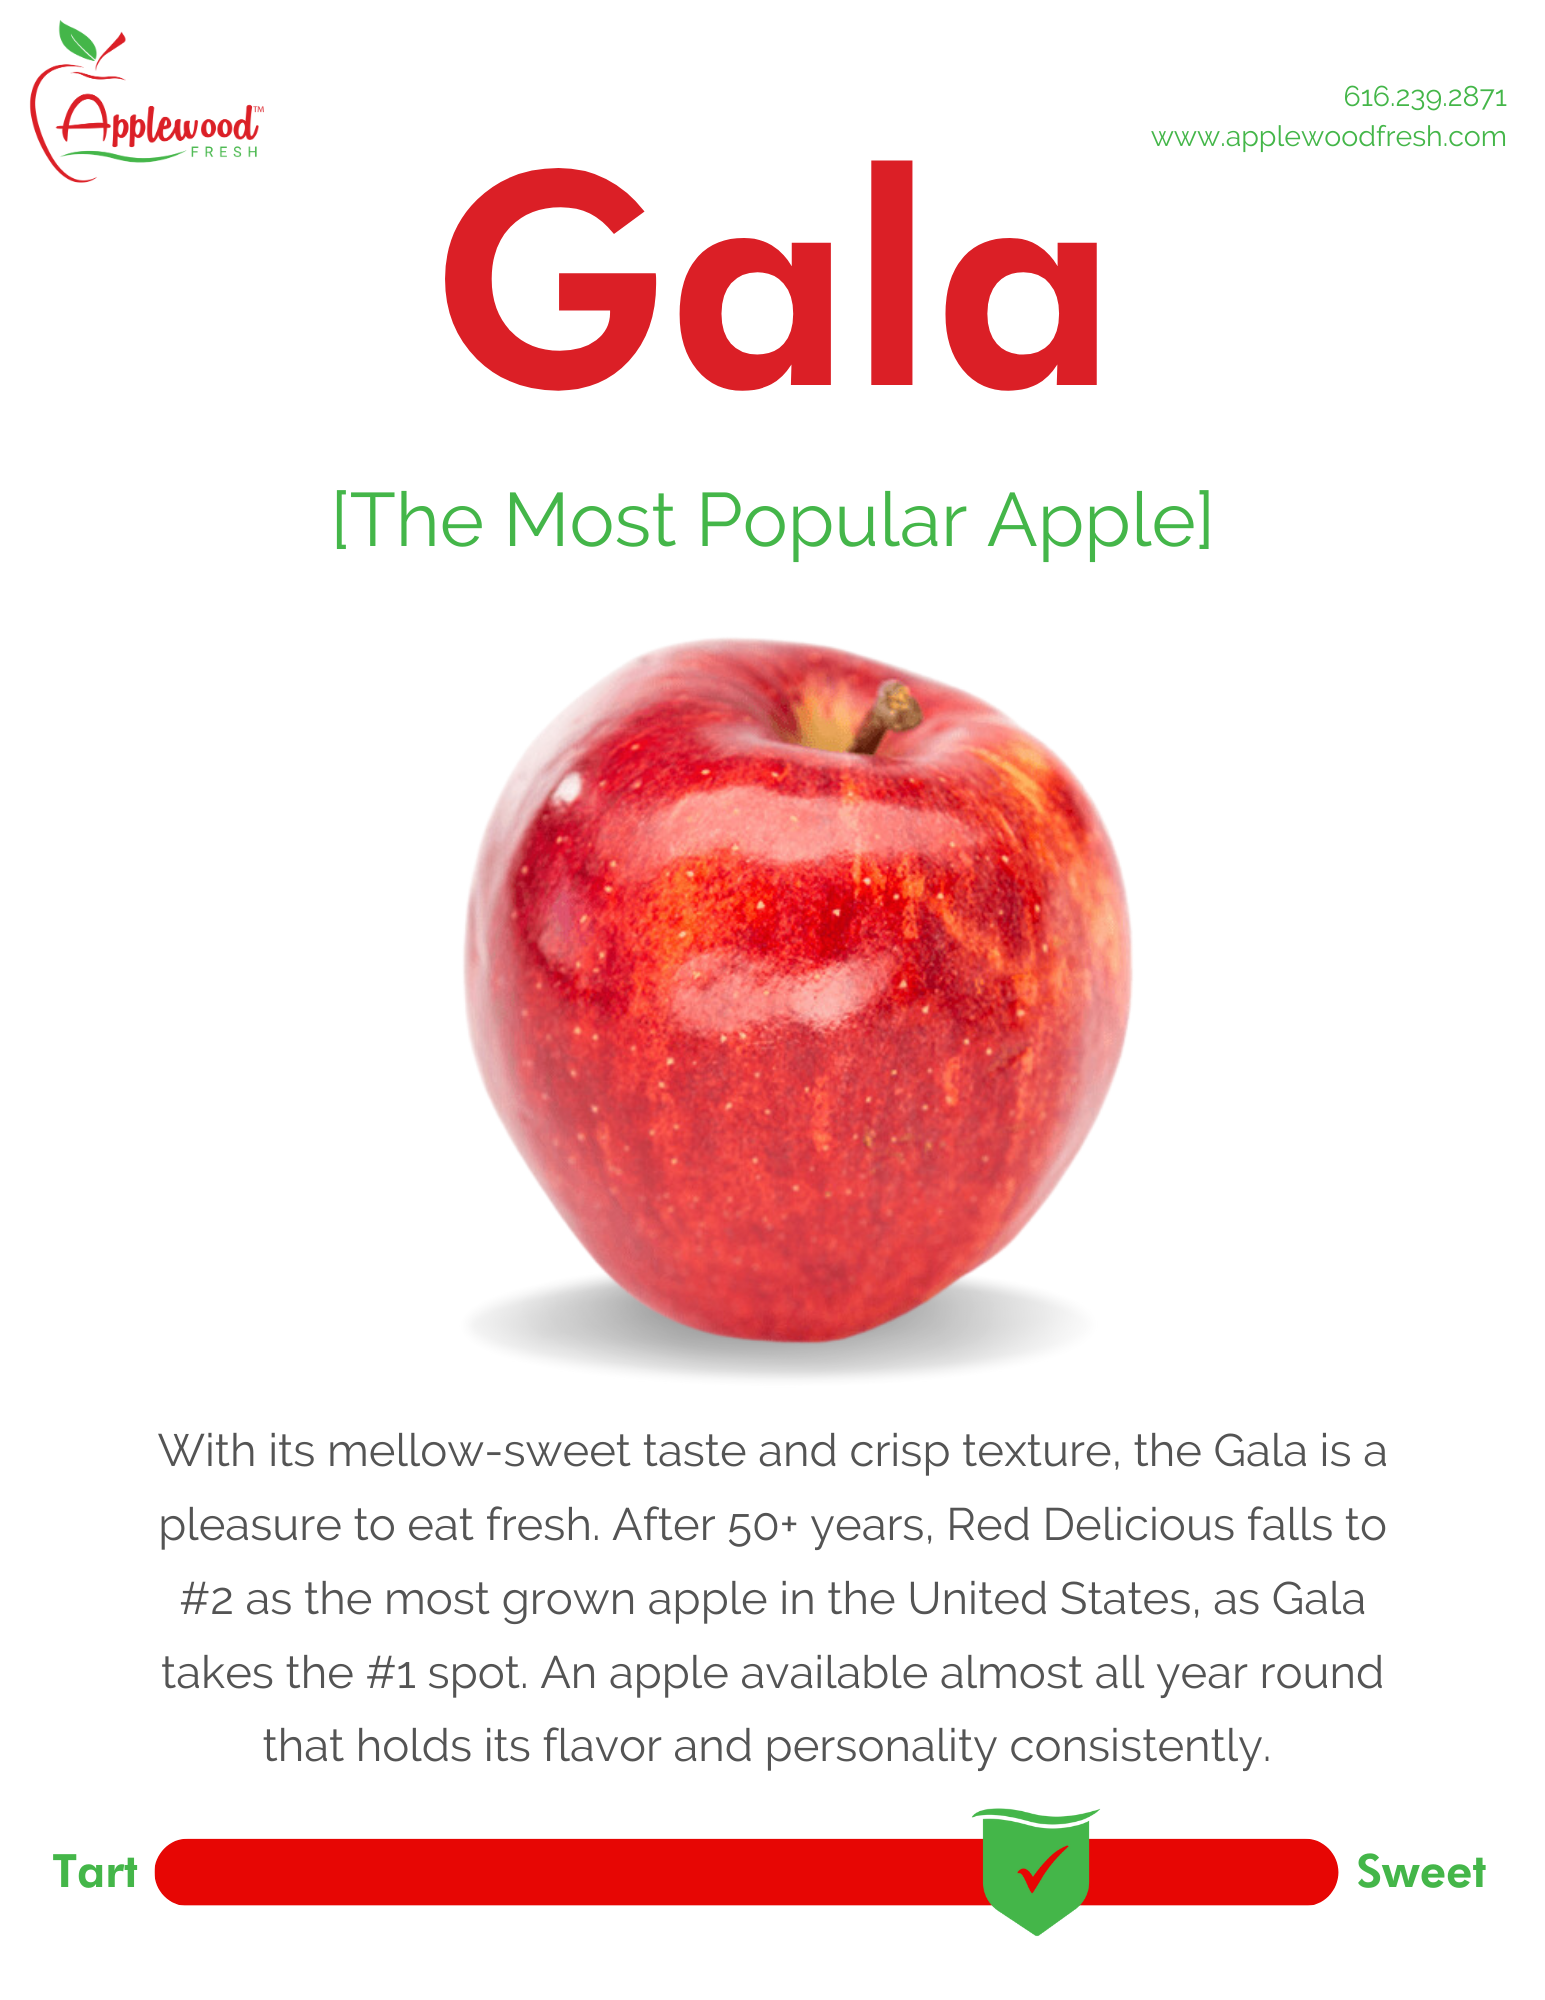 Gala Apple Information Sheet